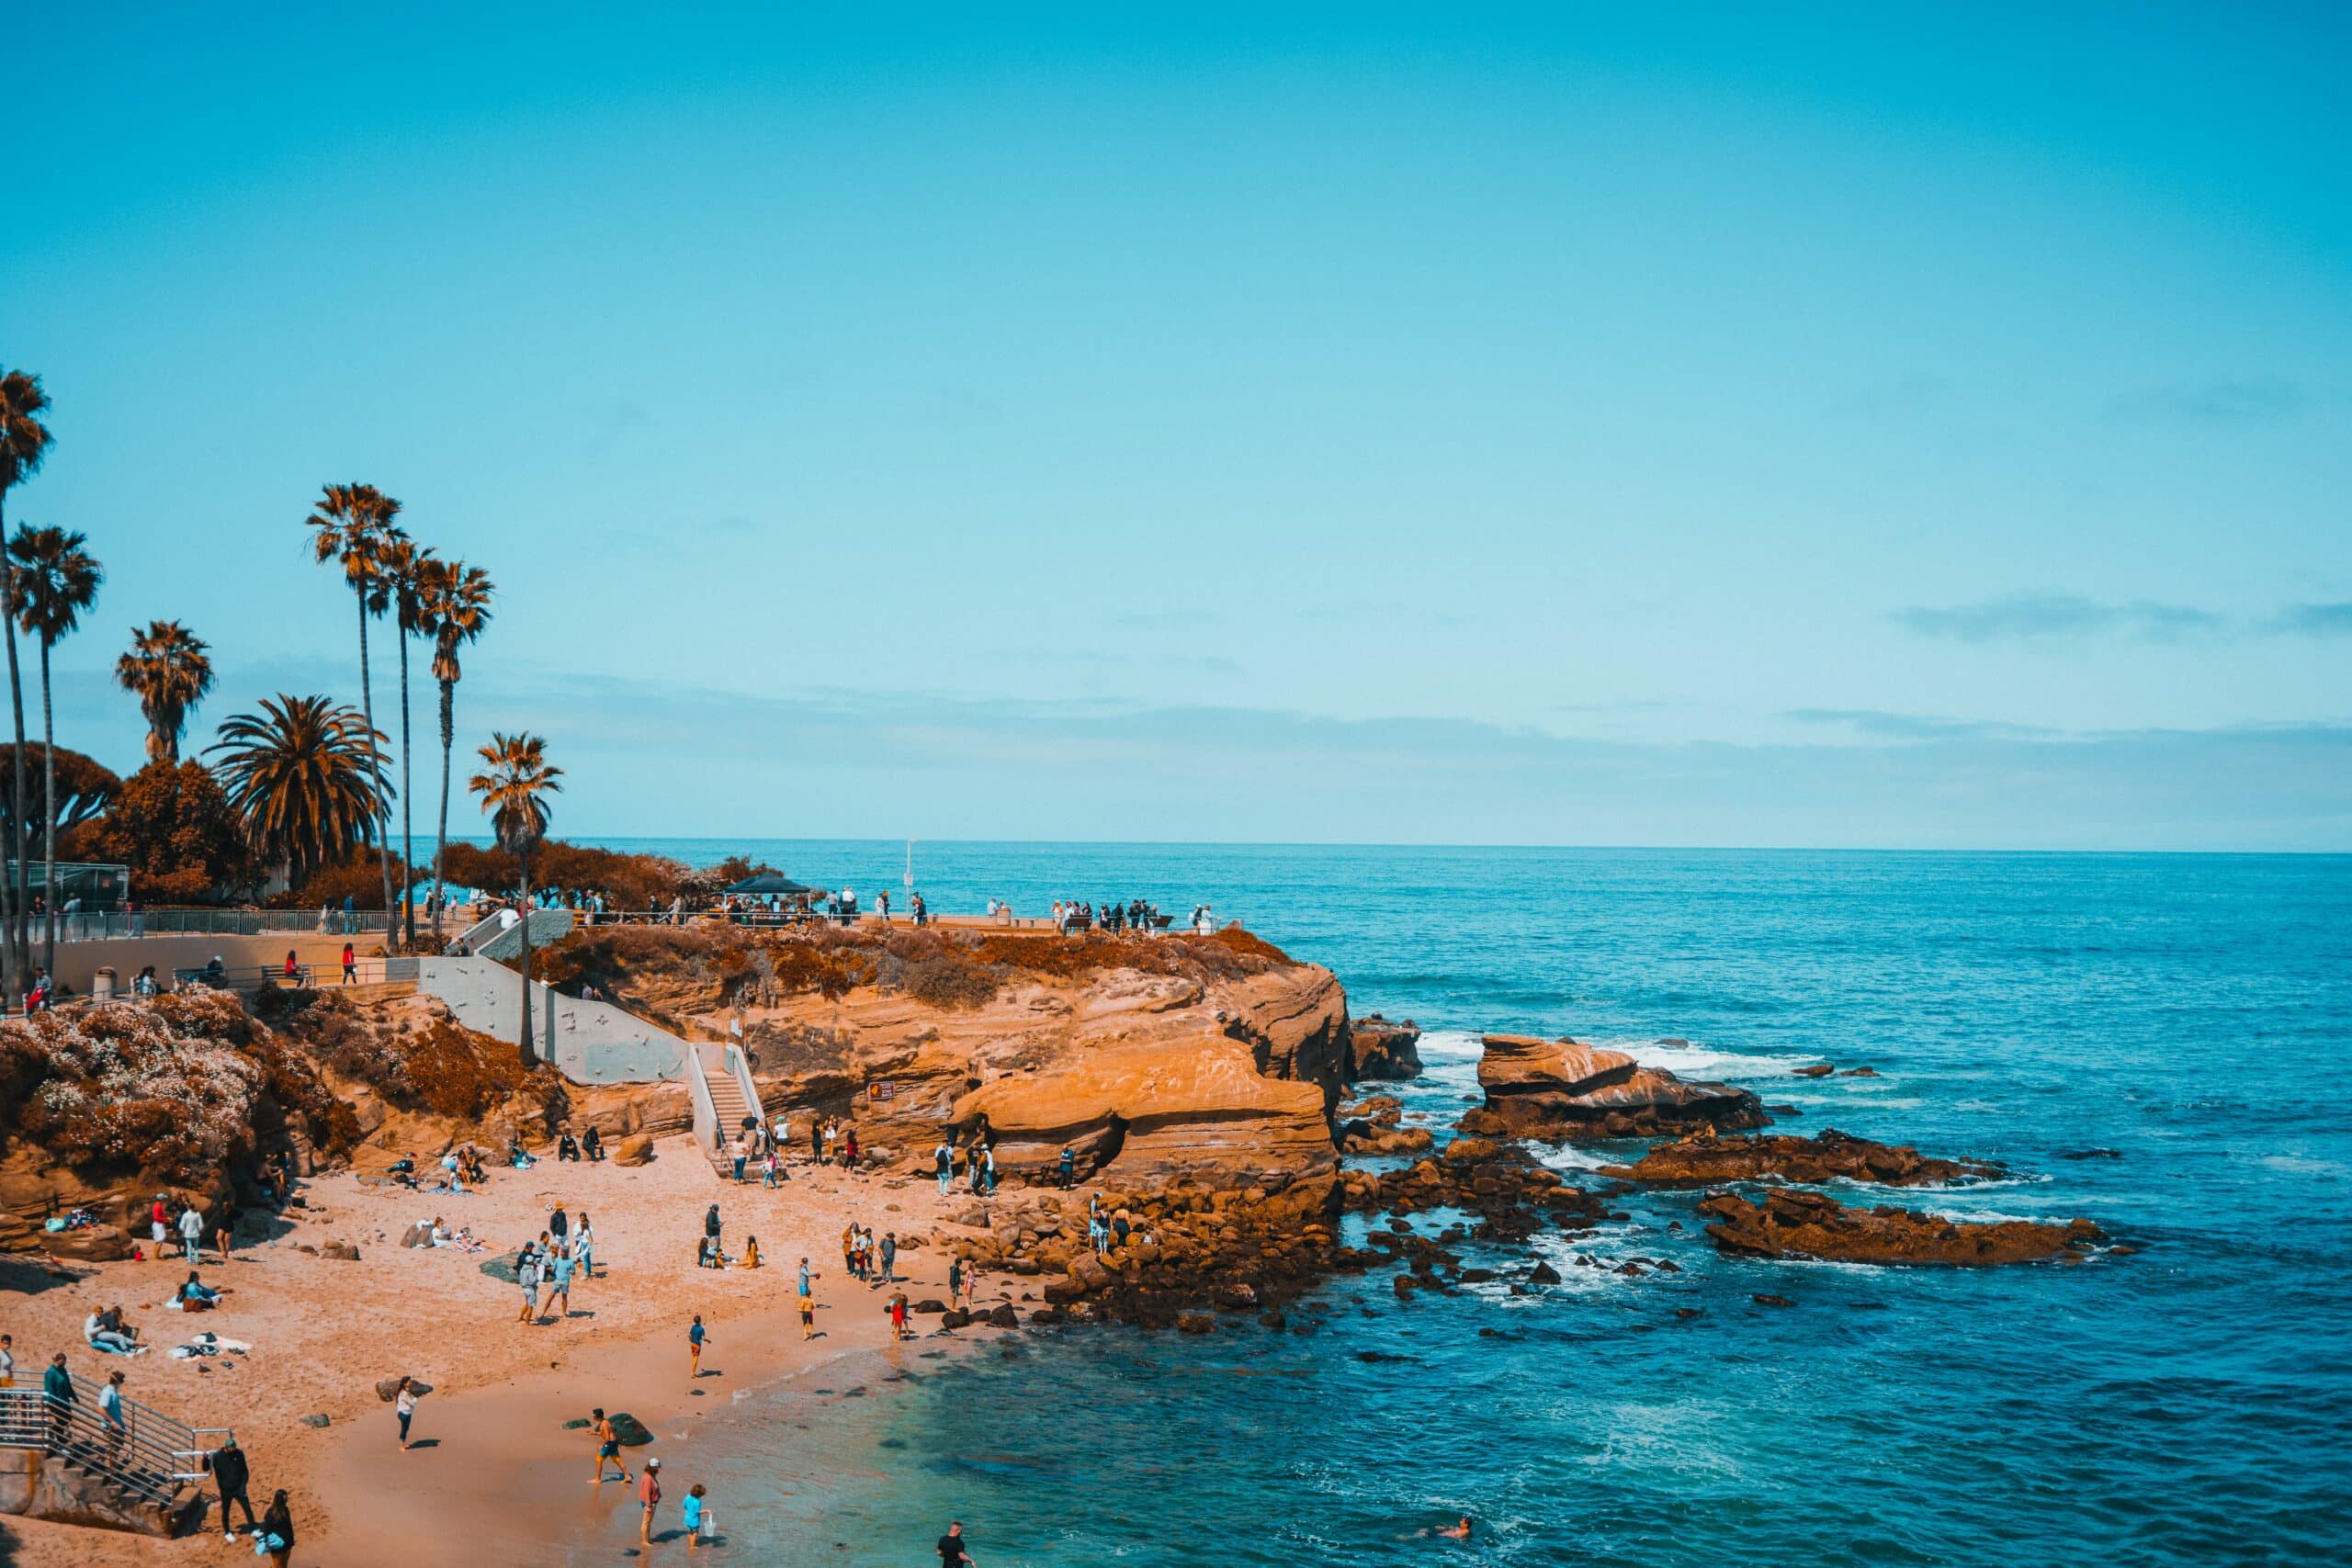 Vista de pessoas na areia da praia em San Diego, Califórnia, Estados Unidos com mar azul e céu limpo e ensolarado.